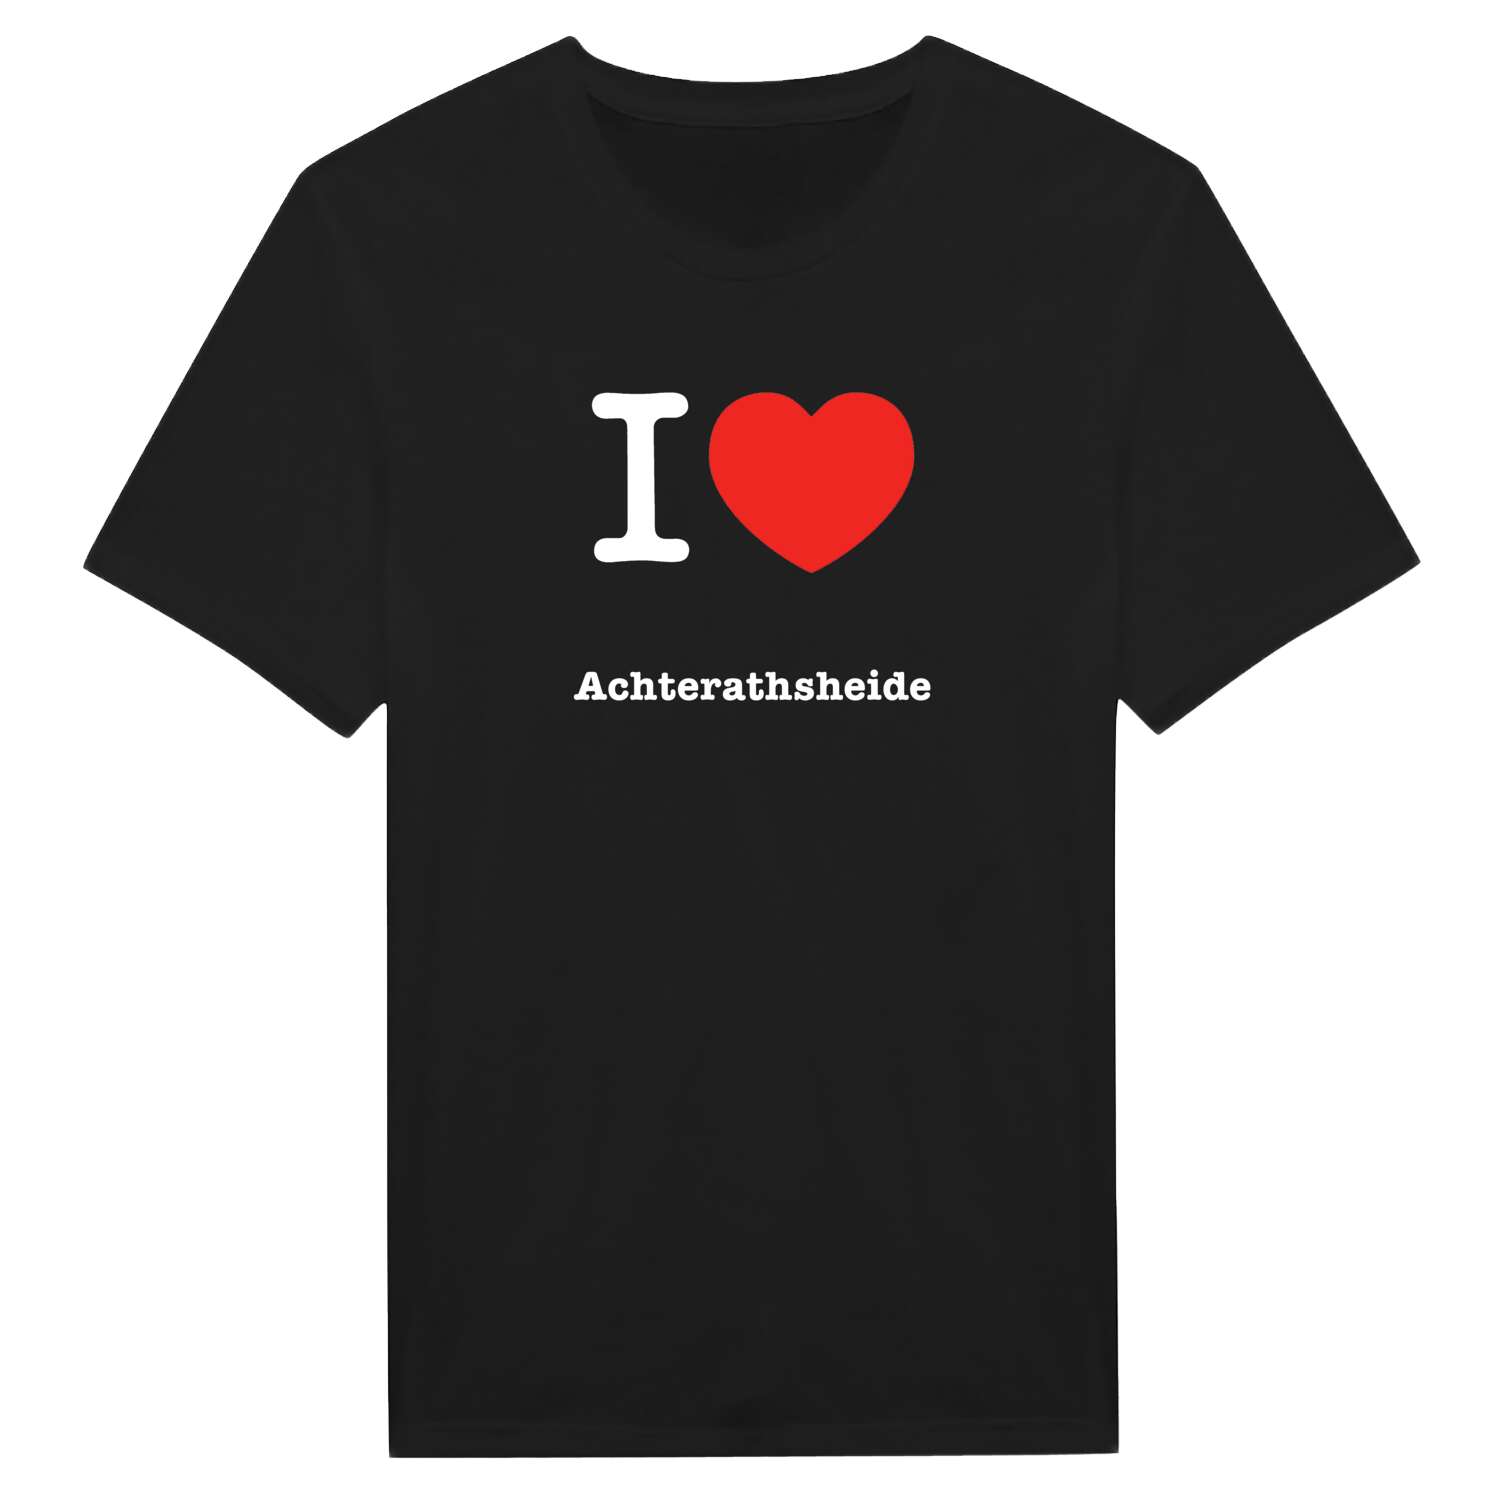 Achterathsheide T-Shirt »I love«